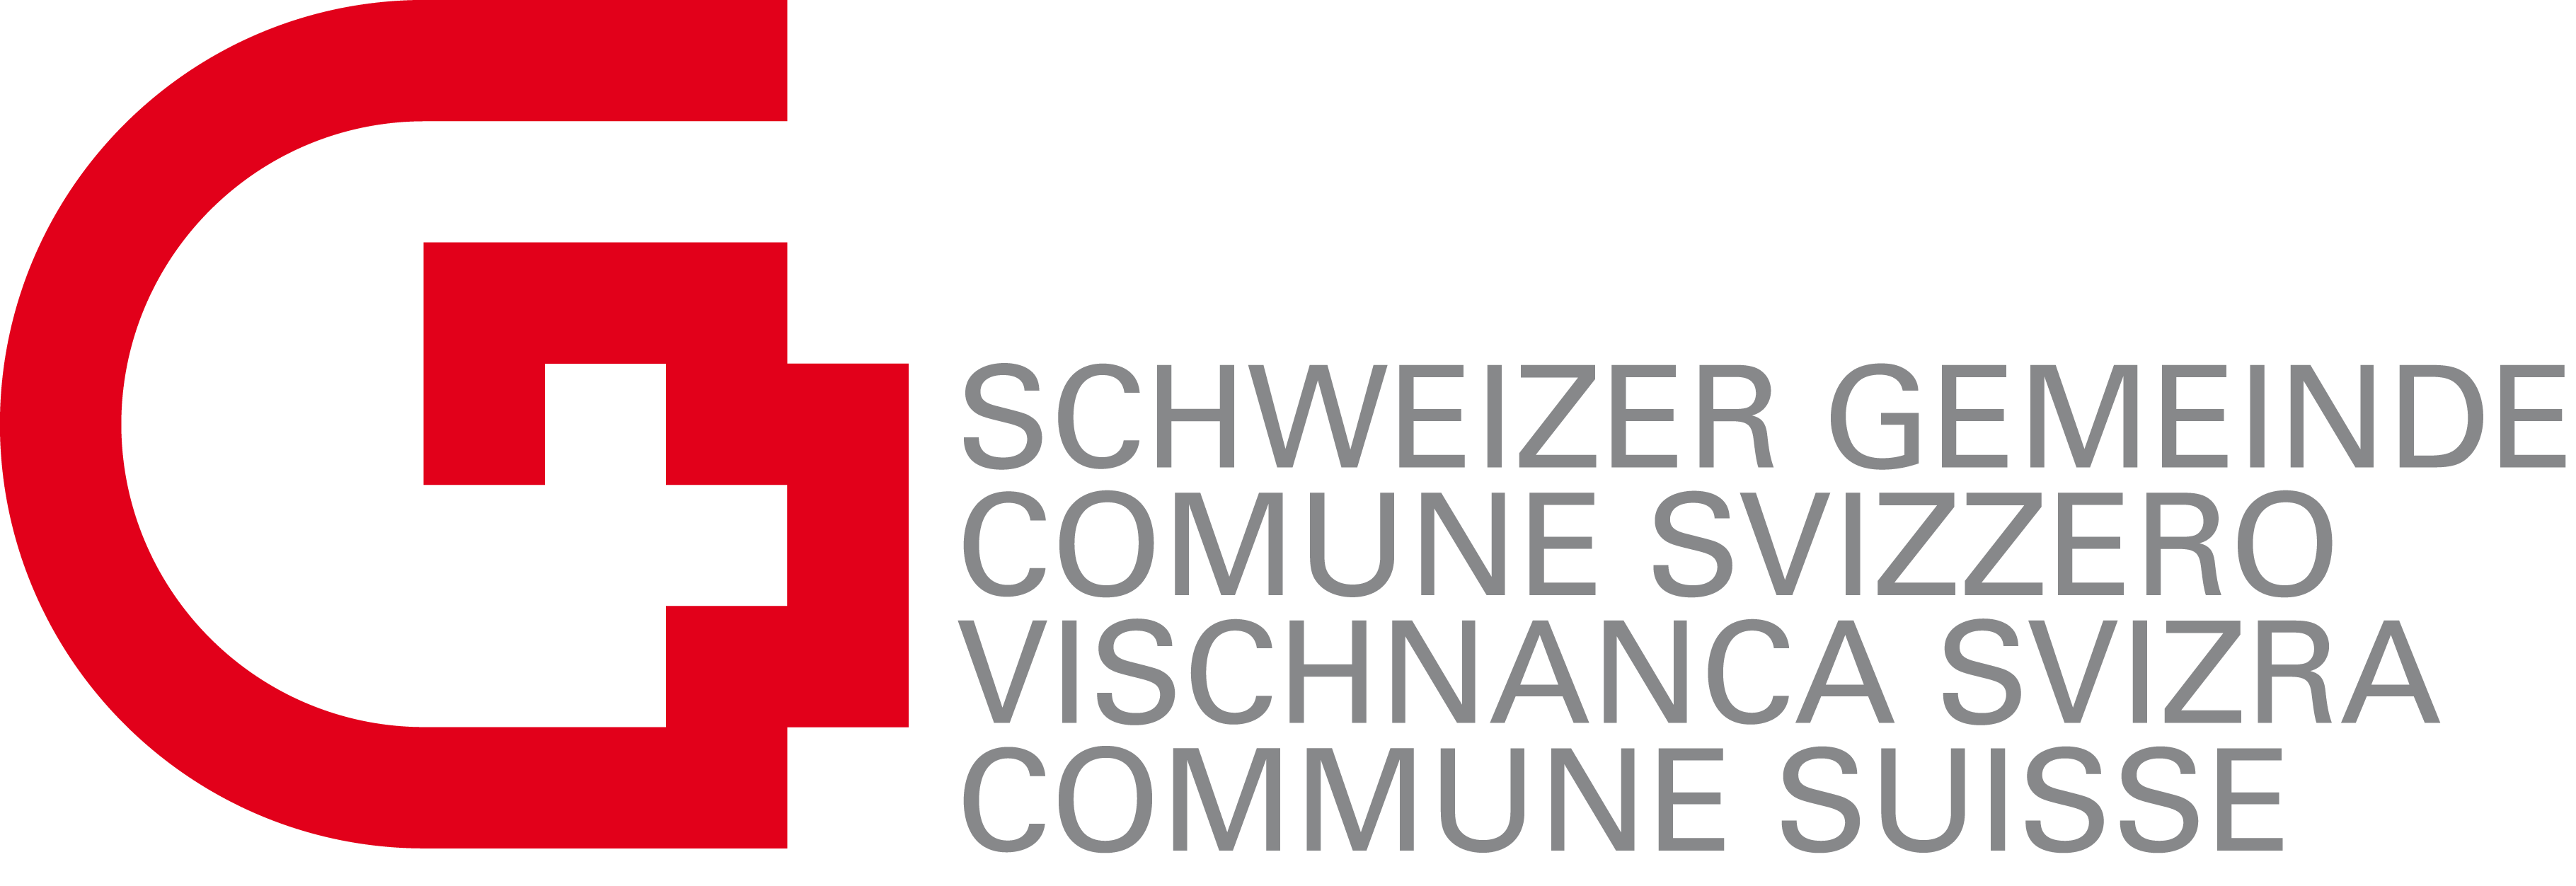 Schweizer Gemeinde